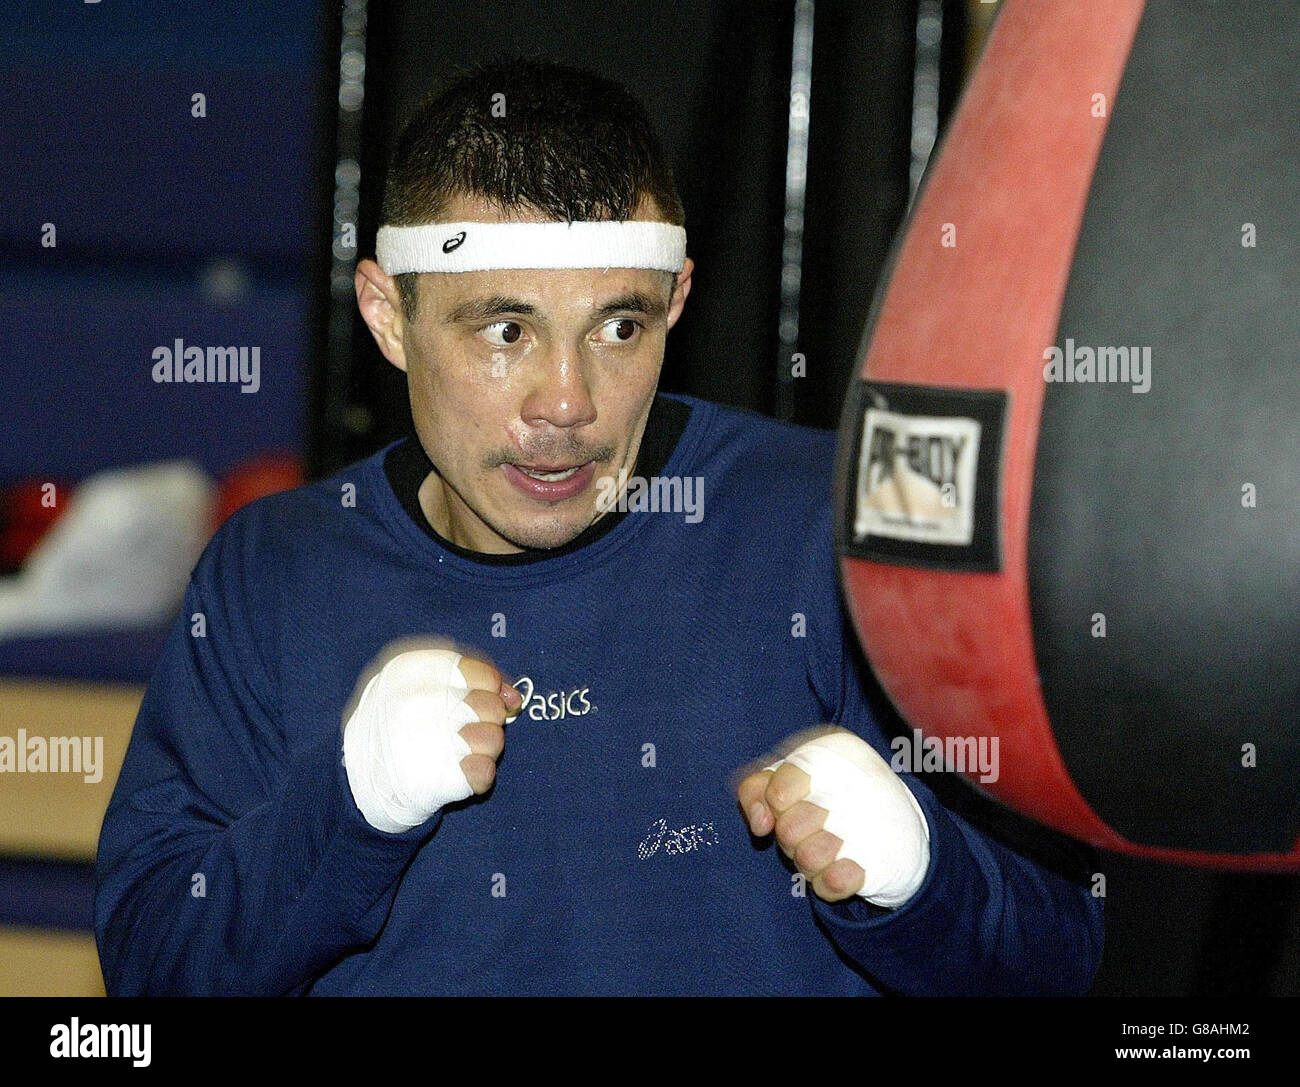 Boxing - Ricky Hatton v Kosta Tszyu - Kosta Tszyu Training Session - Bolton Arena. Kosta Tszyu prepares himself on speed ball. Stock Photo